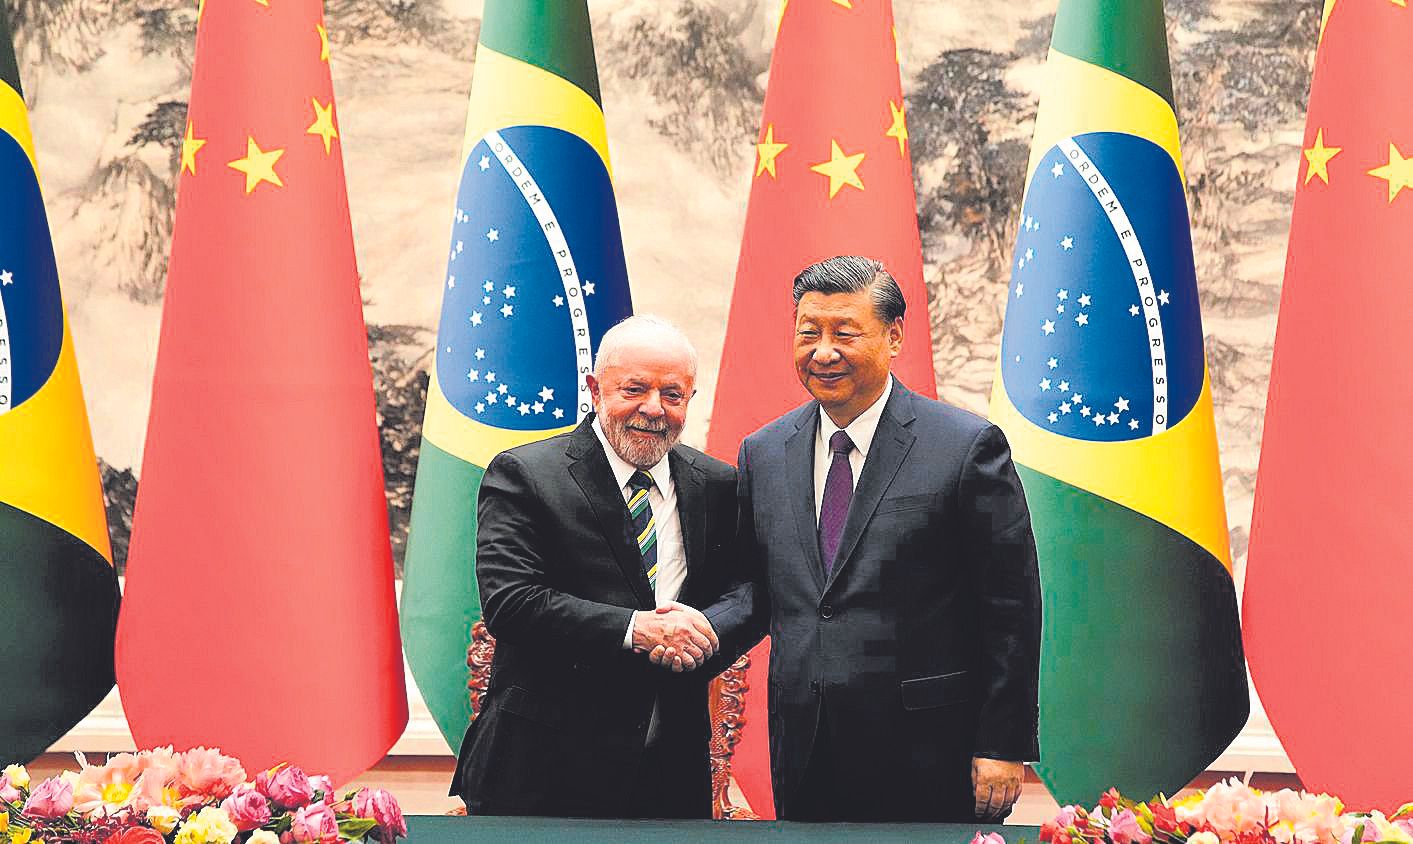 El presidente de Brasil, Lula Da Silva, estrecha la mano de su homólogo chino, Xi Jinping, en un encuentro en Pekín el pasado 14 de abril.